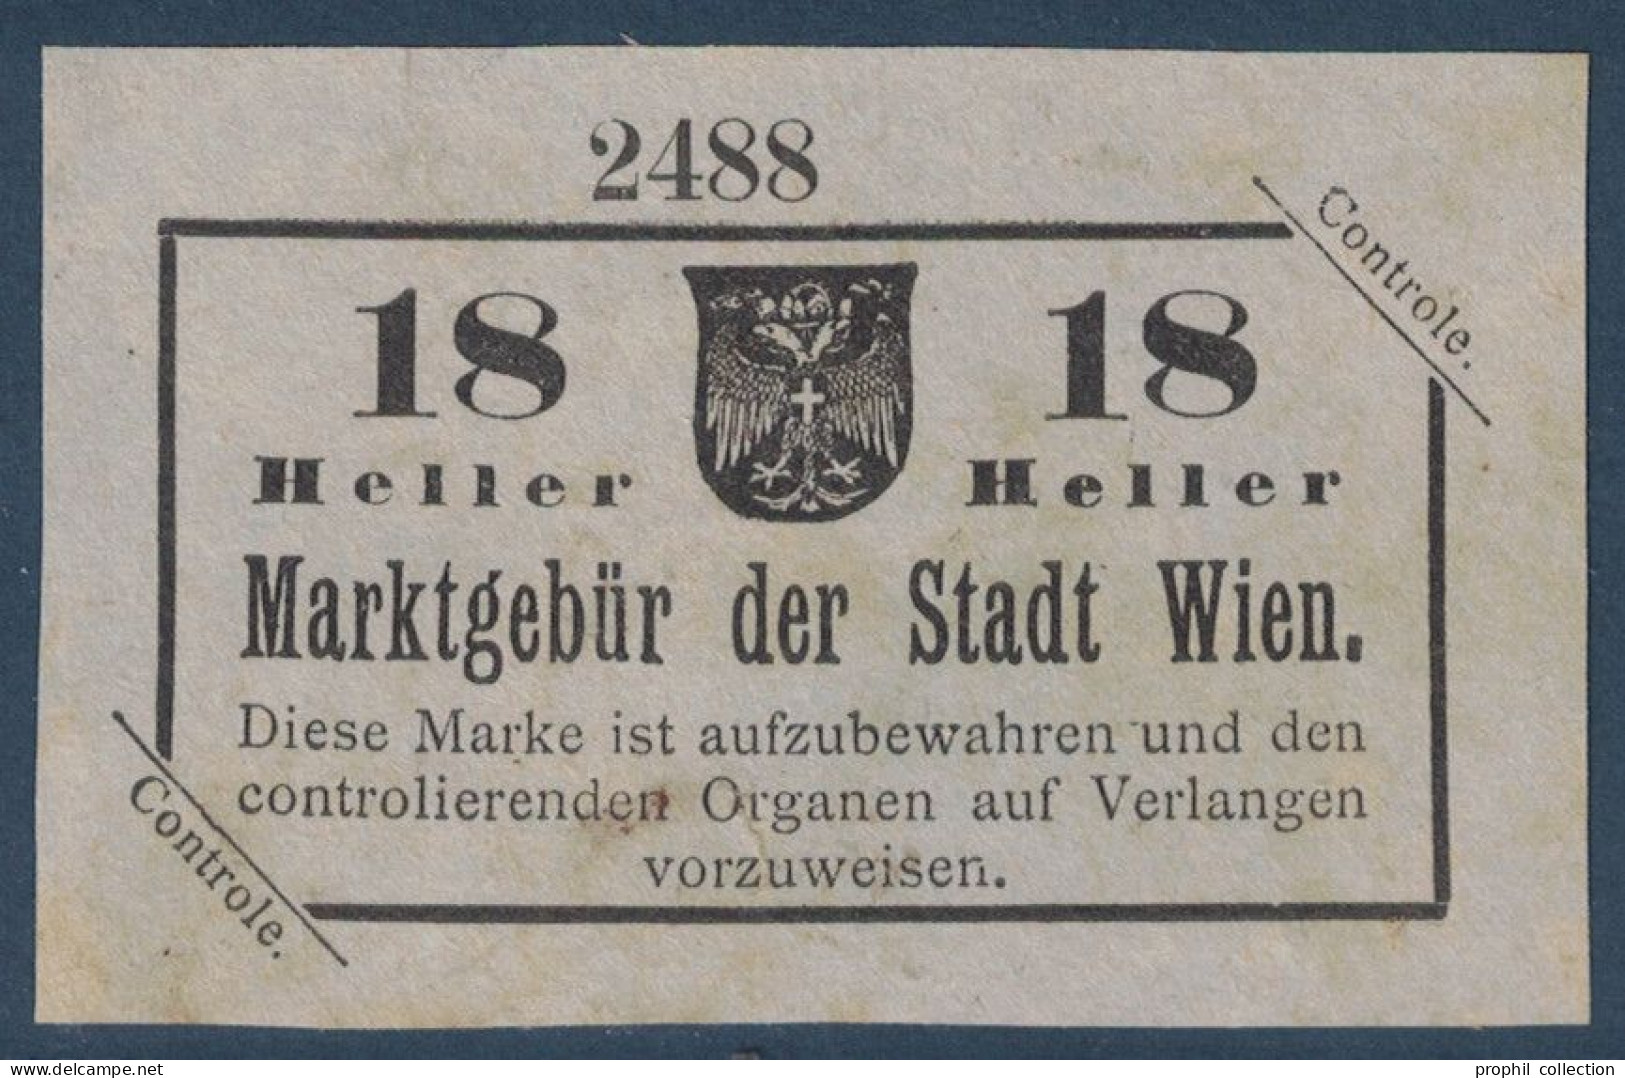 VIGNETTE Ou TIMBRE FISCAL ? " MARKGEBÜR DER STADT WIEN " CONTROLE 18 HELLER REVENUE AUSTRIA AUTRICHE VIENNE - Revenue Stamps